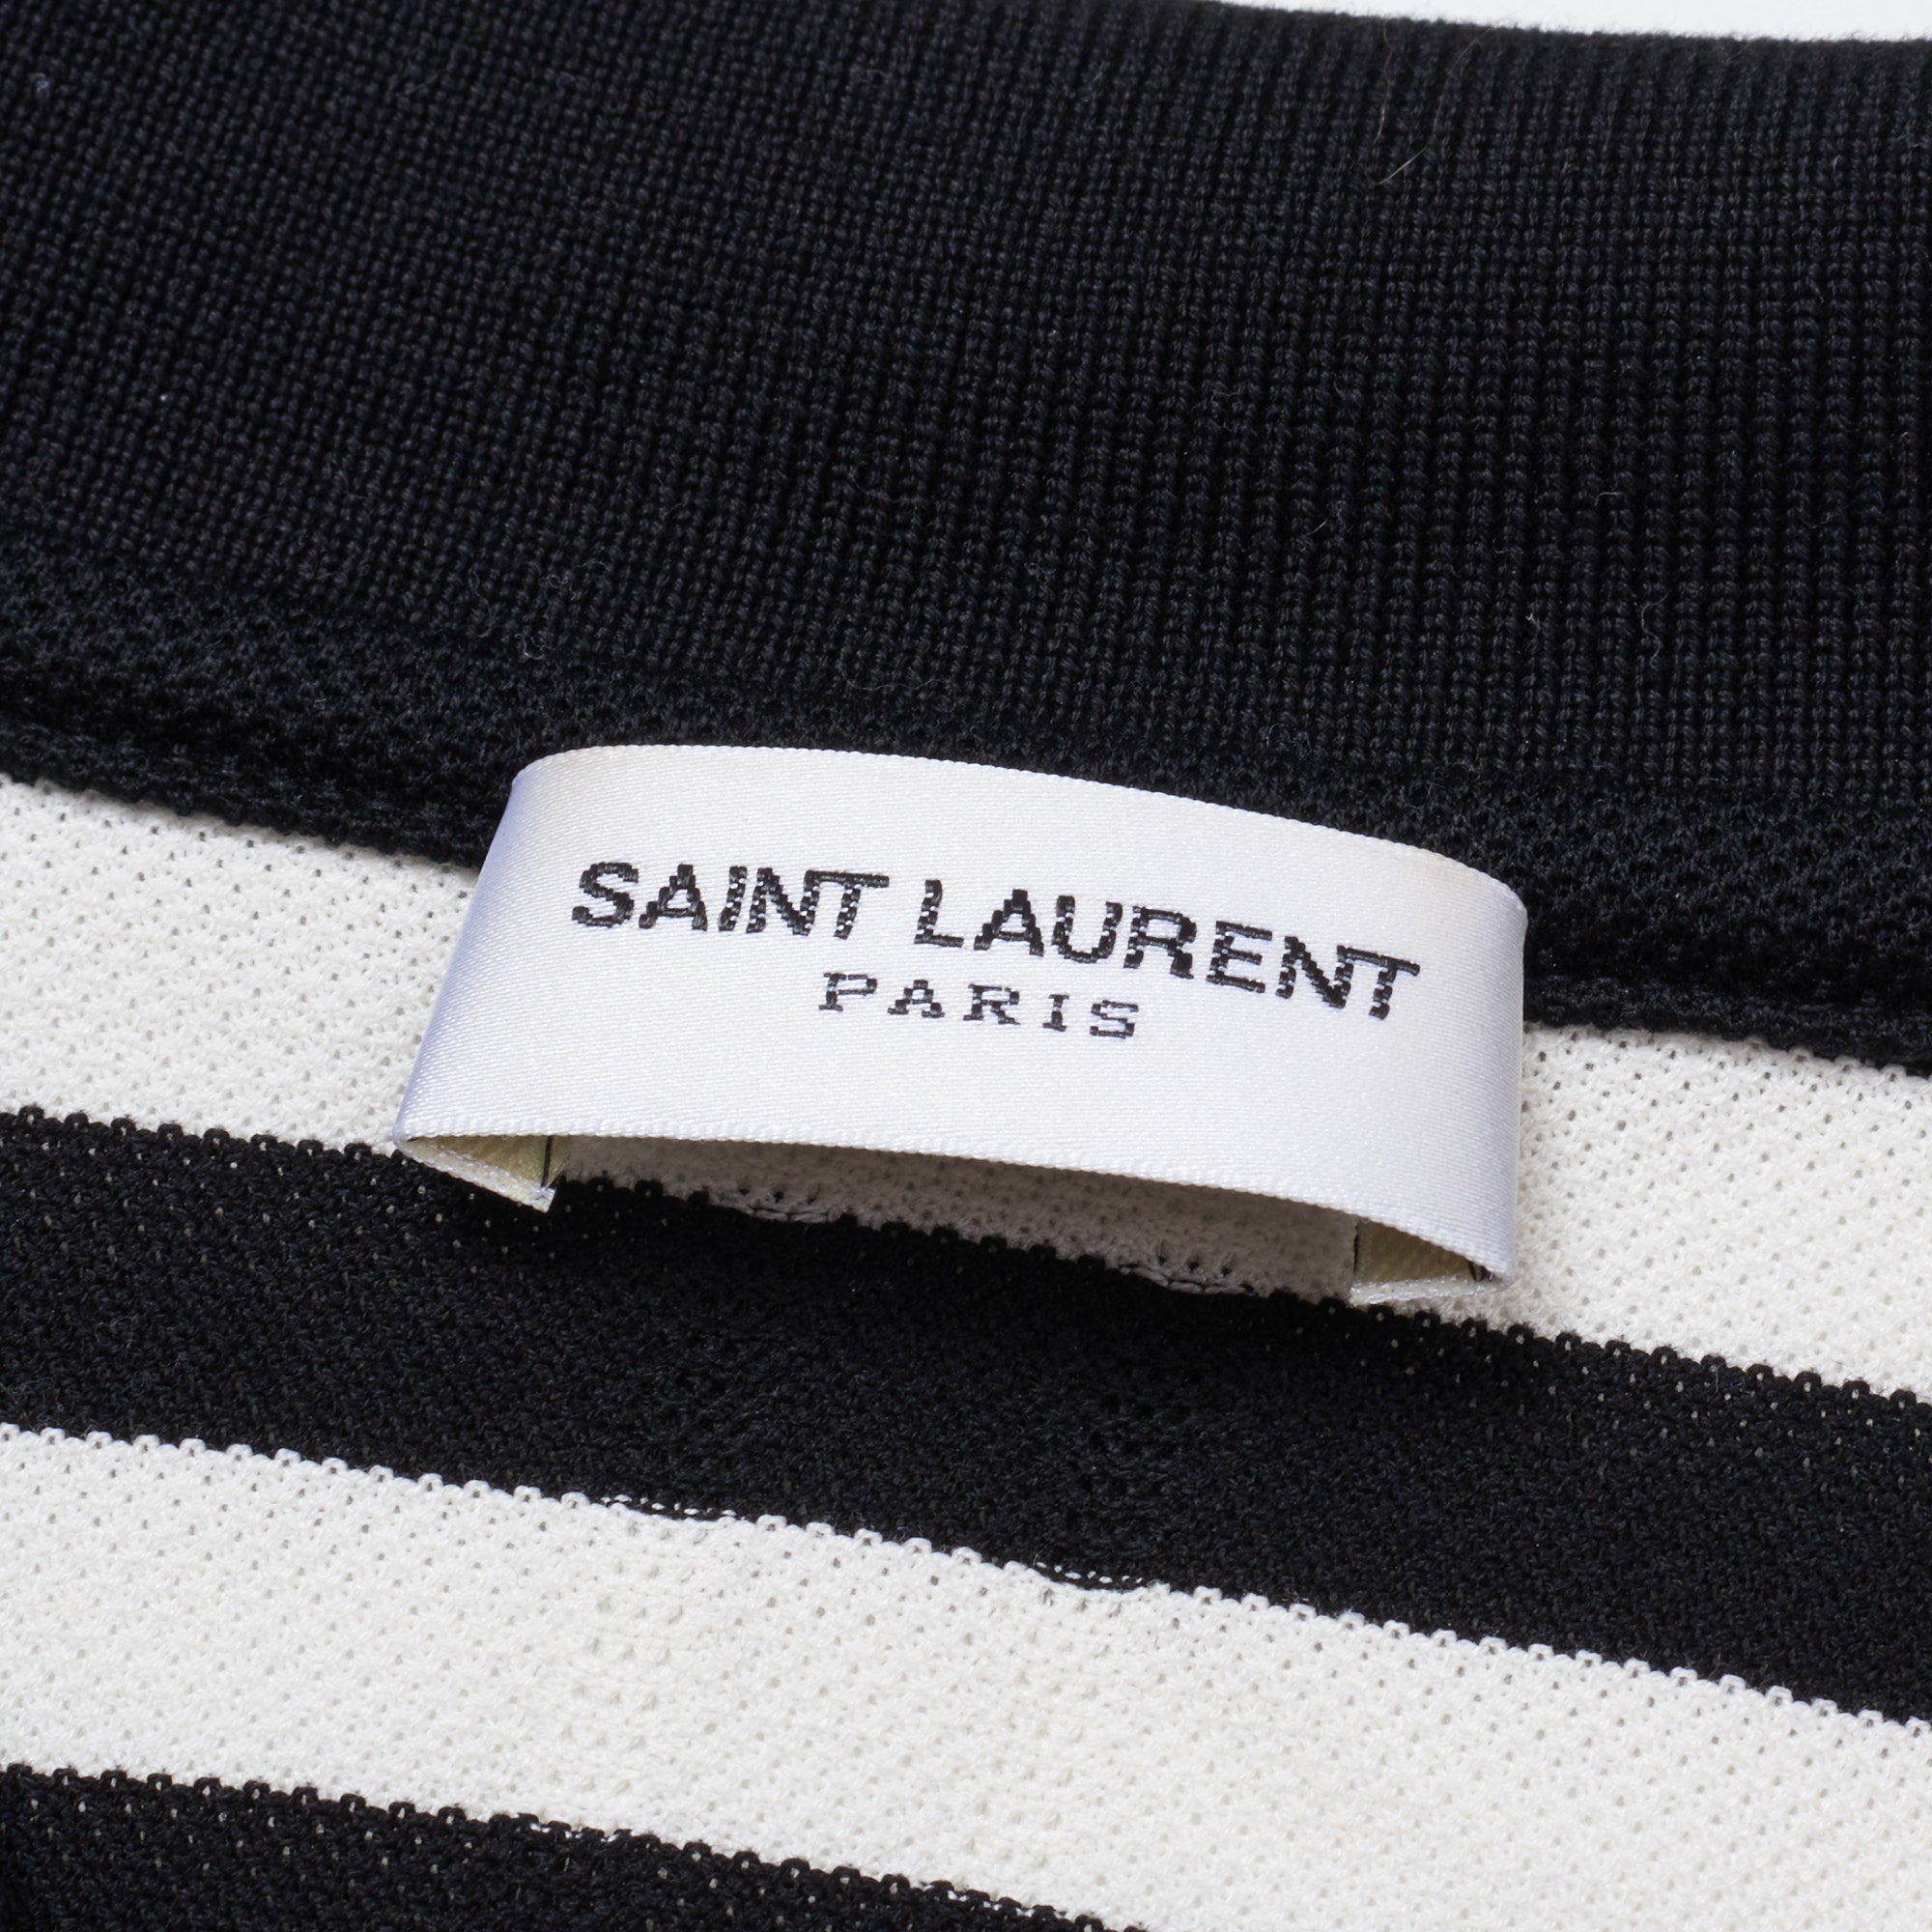 SAINT LAURENT PARIS Black-White Striped Pique Cotton Polo Shirt XL